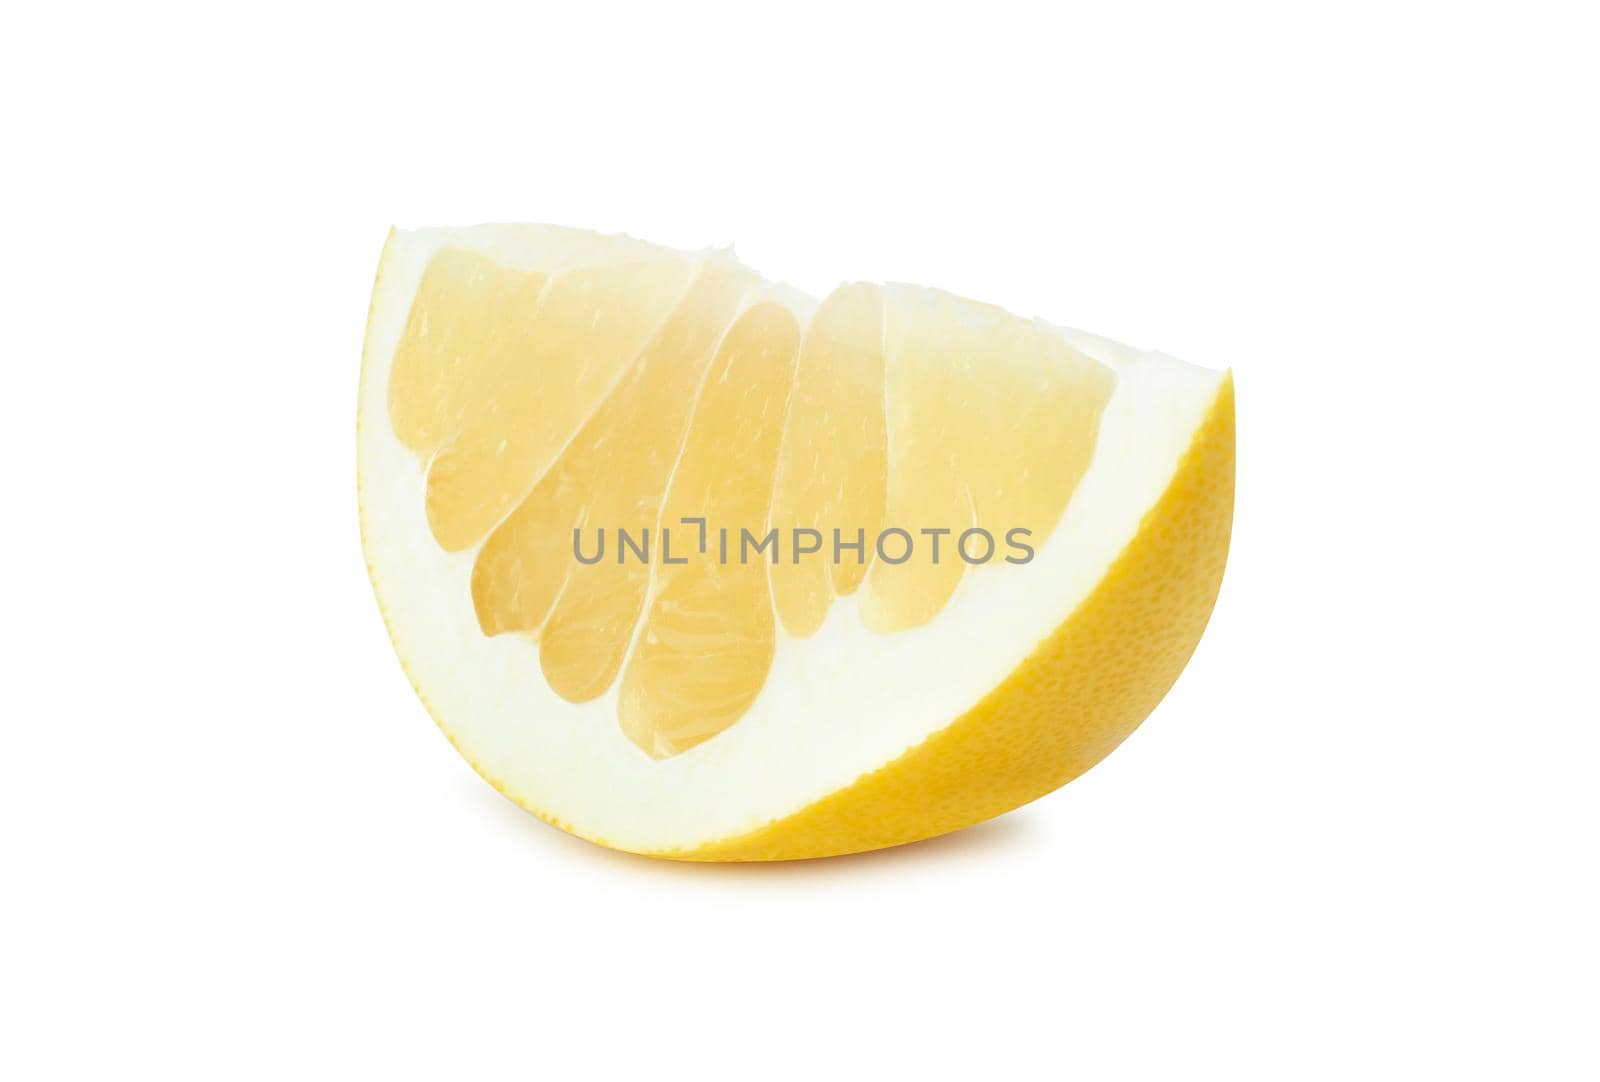 Pamela citrus fruit slice isolated on white background by SlayCer